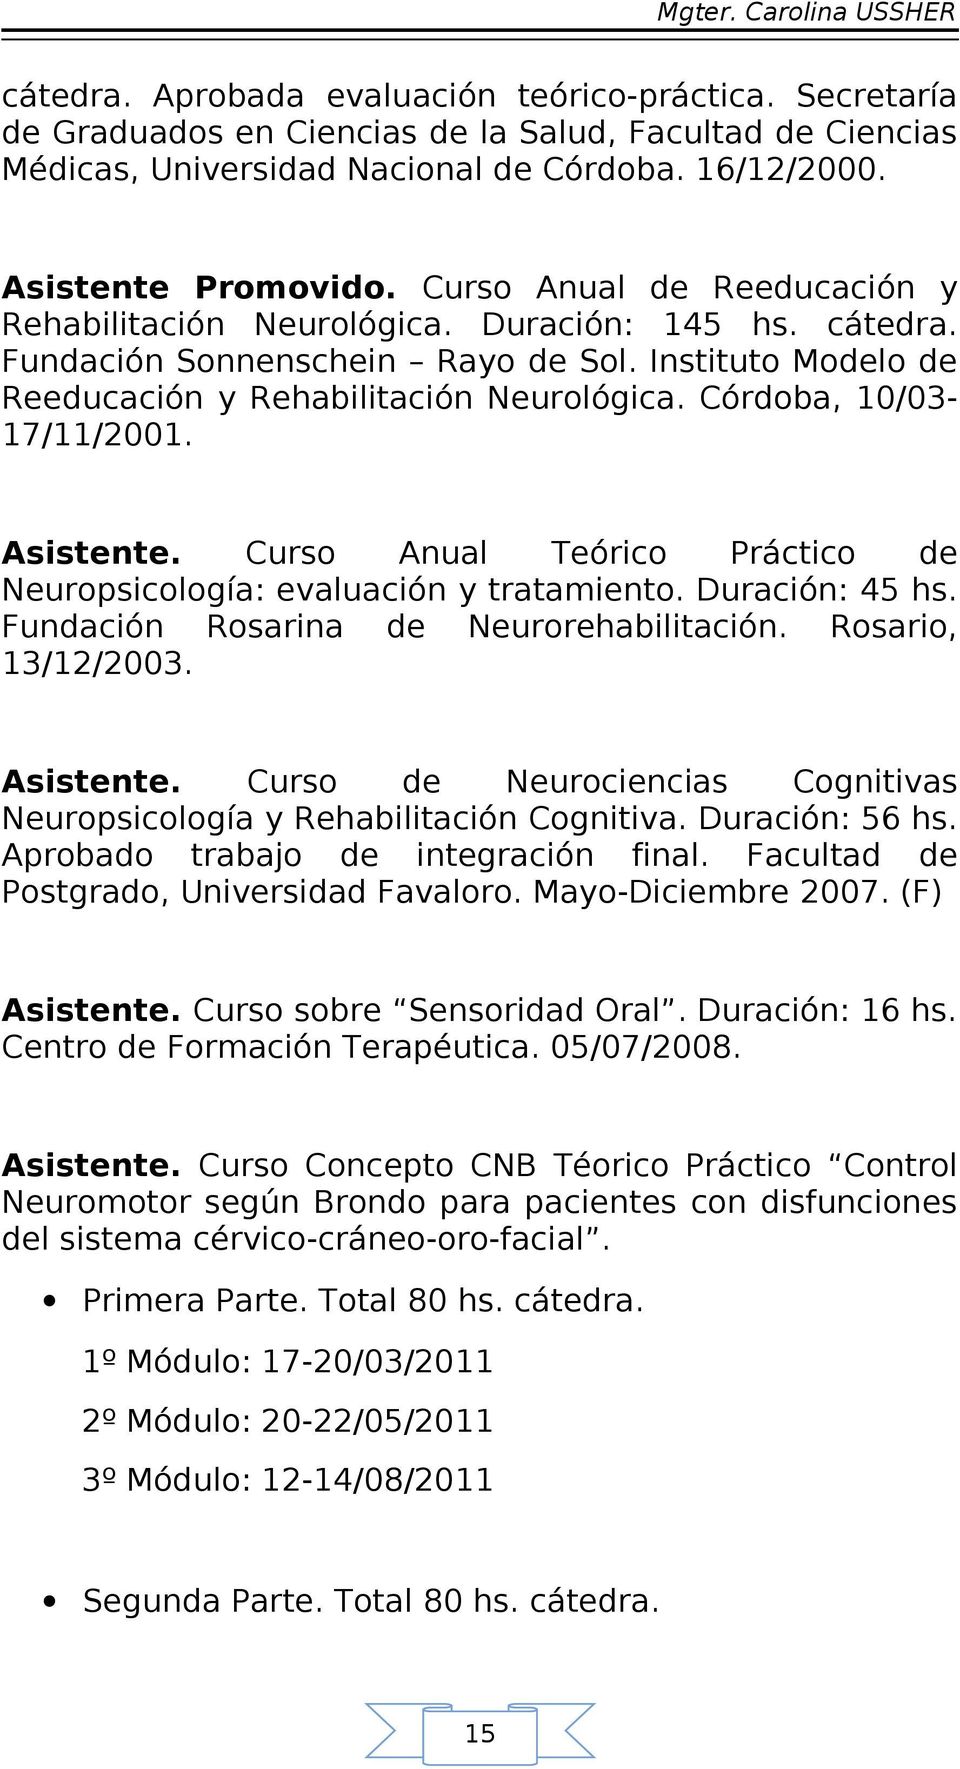 Córdoba, 10/03-17/11/2001. Asistente. Curso Anual Teórico Práctico de Neuropsicología: evaluación y tratamiento. Duración: 45 hs. Fundación Rosarina de Neurorehabilitación. Rosario, 13/12/2003.